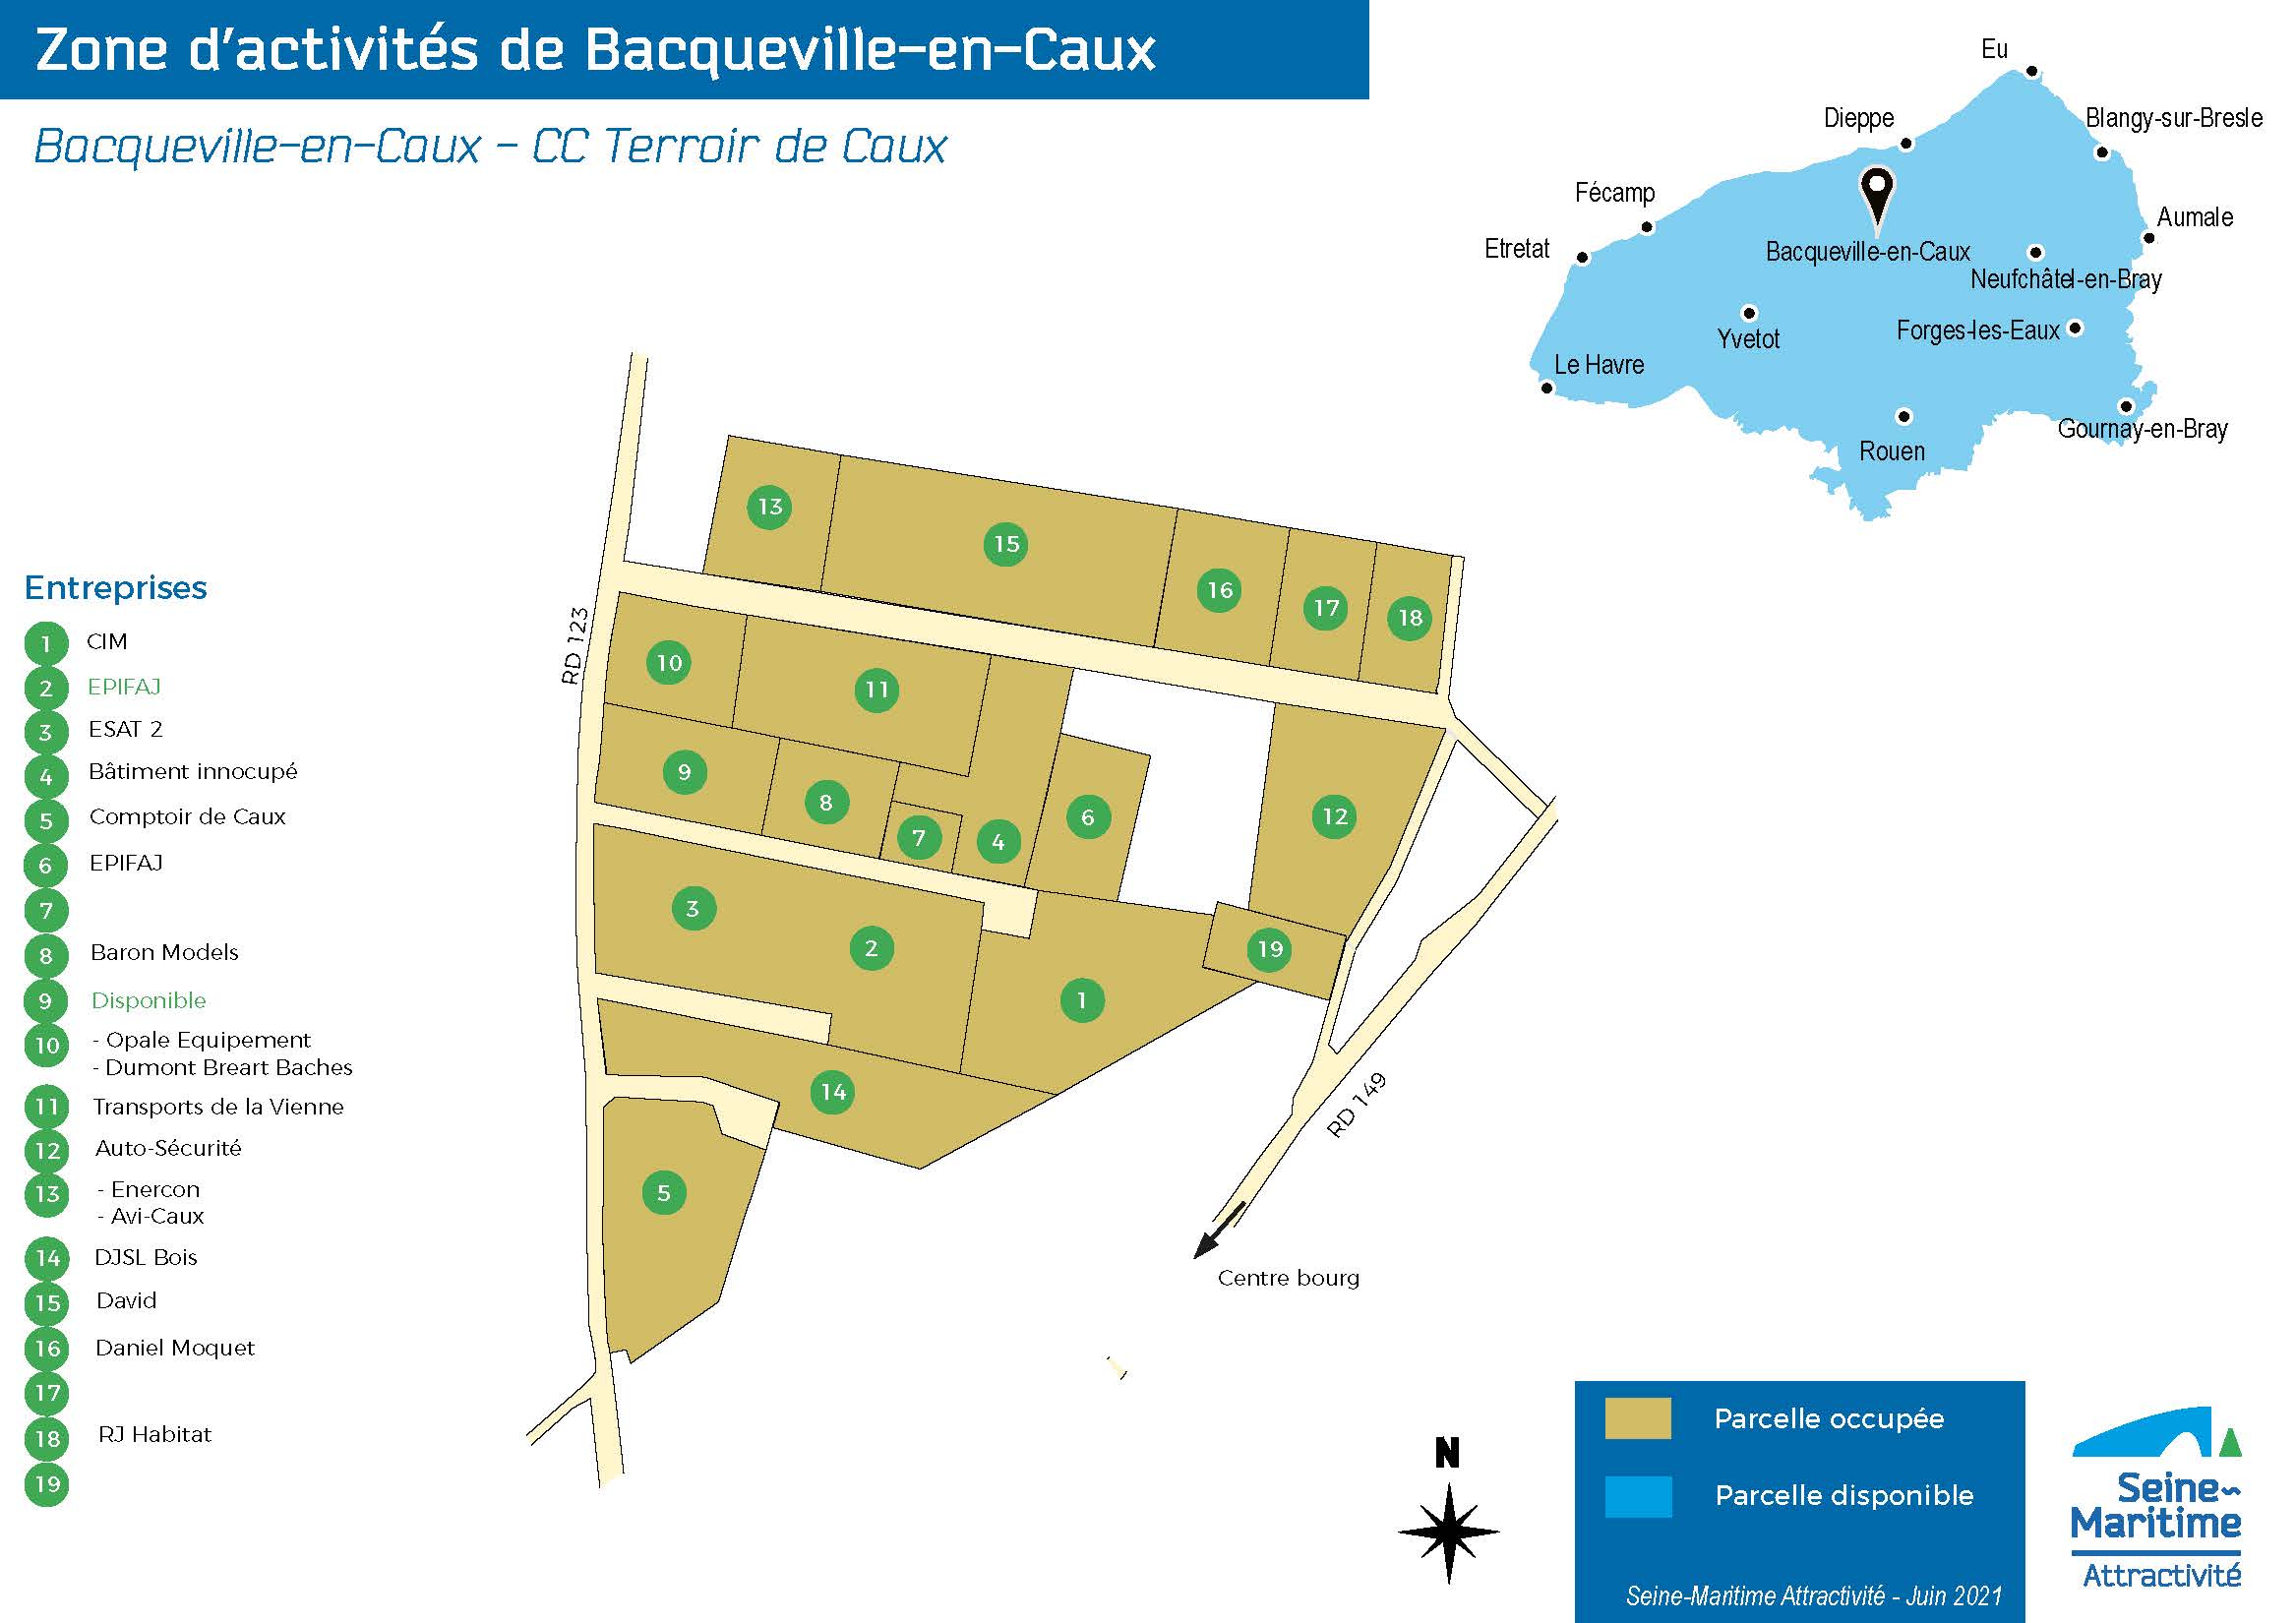 ZA de Bacqueville-en-Caux